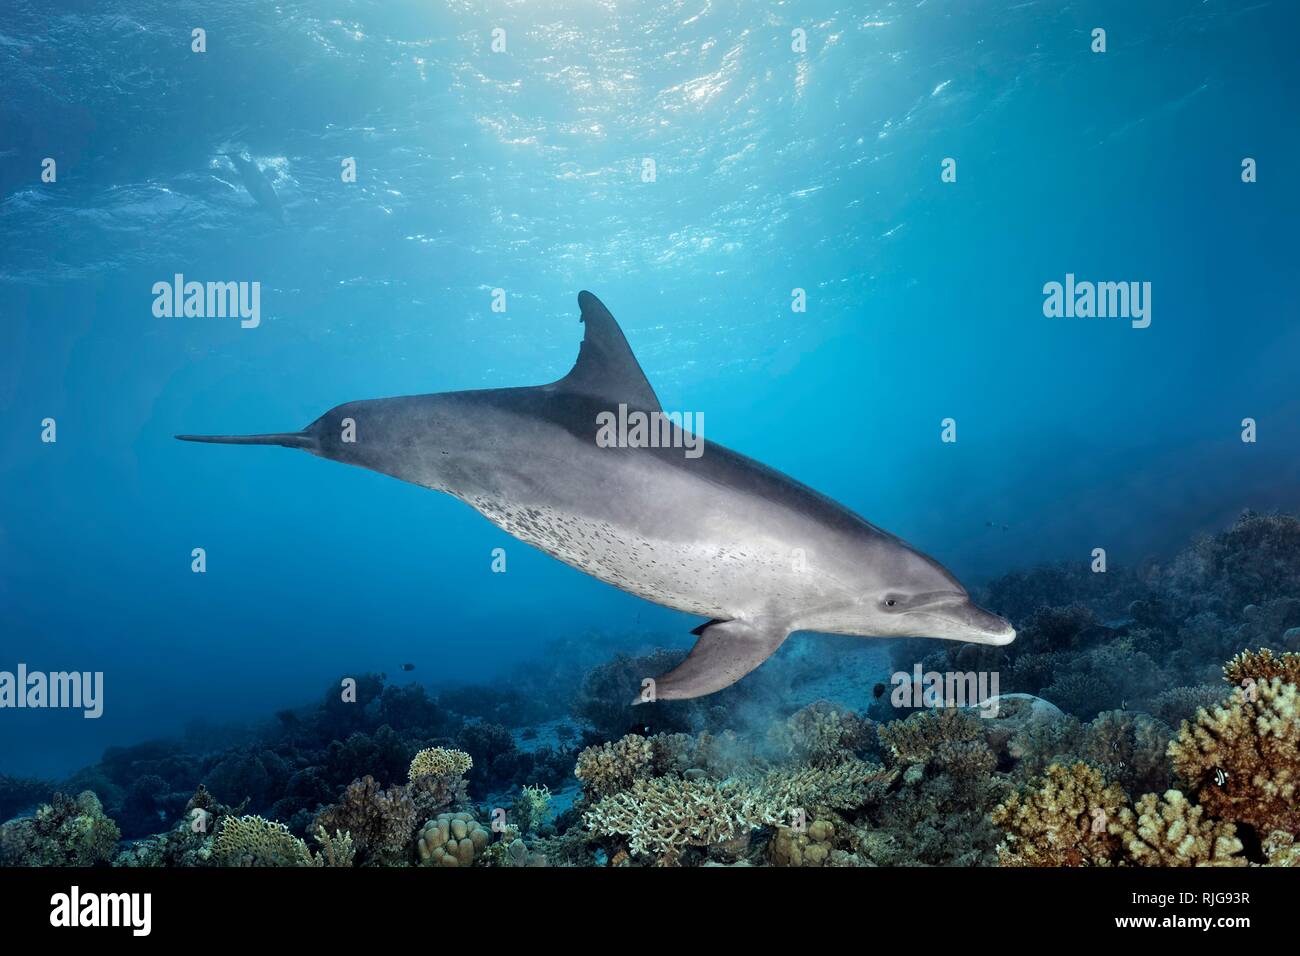 El delfín mular (Tursiops truncatus), hembra, nadando bajo el agua en la superficie del sol a lo largo de arrecifes de coral, el Mar Rojo, Egipto Foto de stock